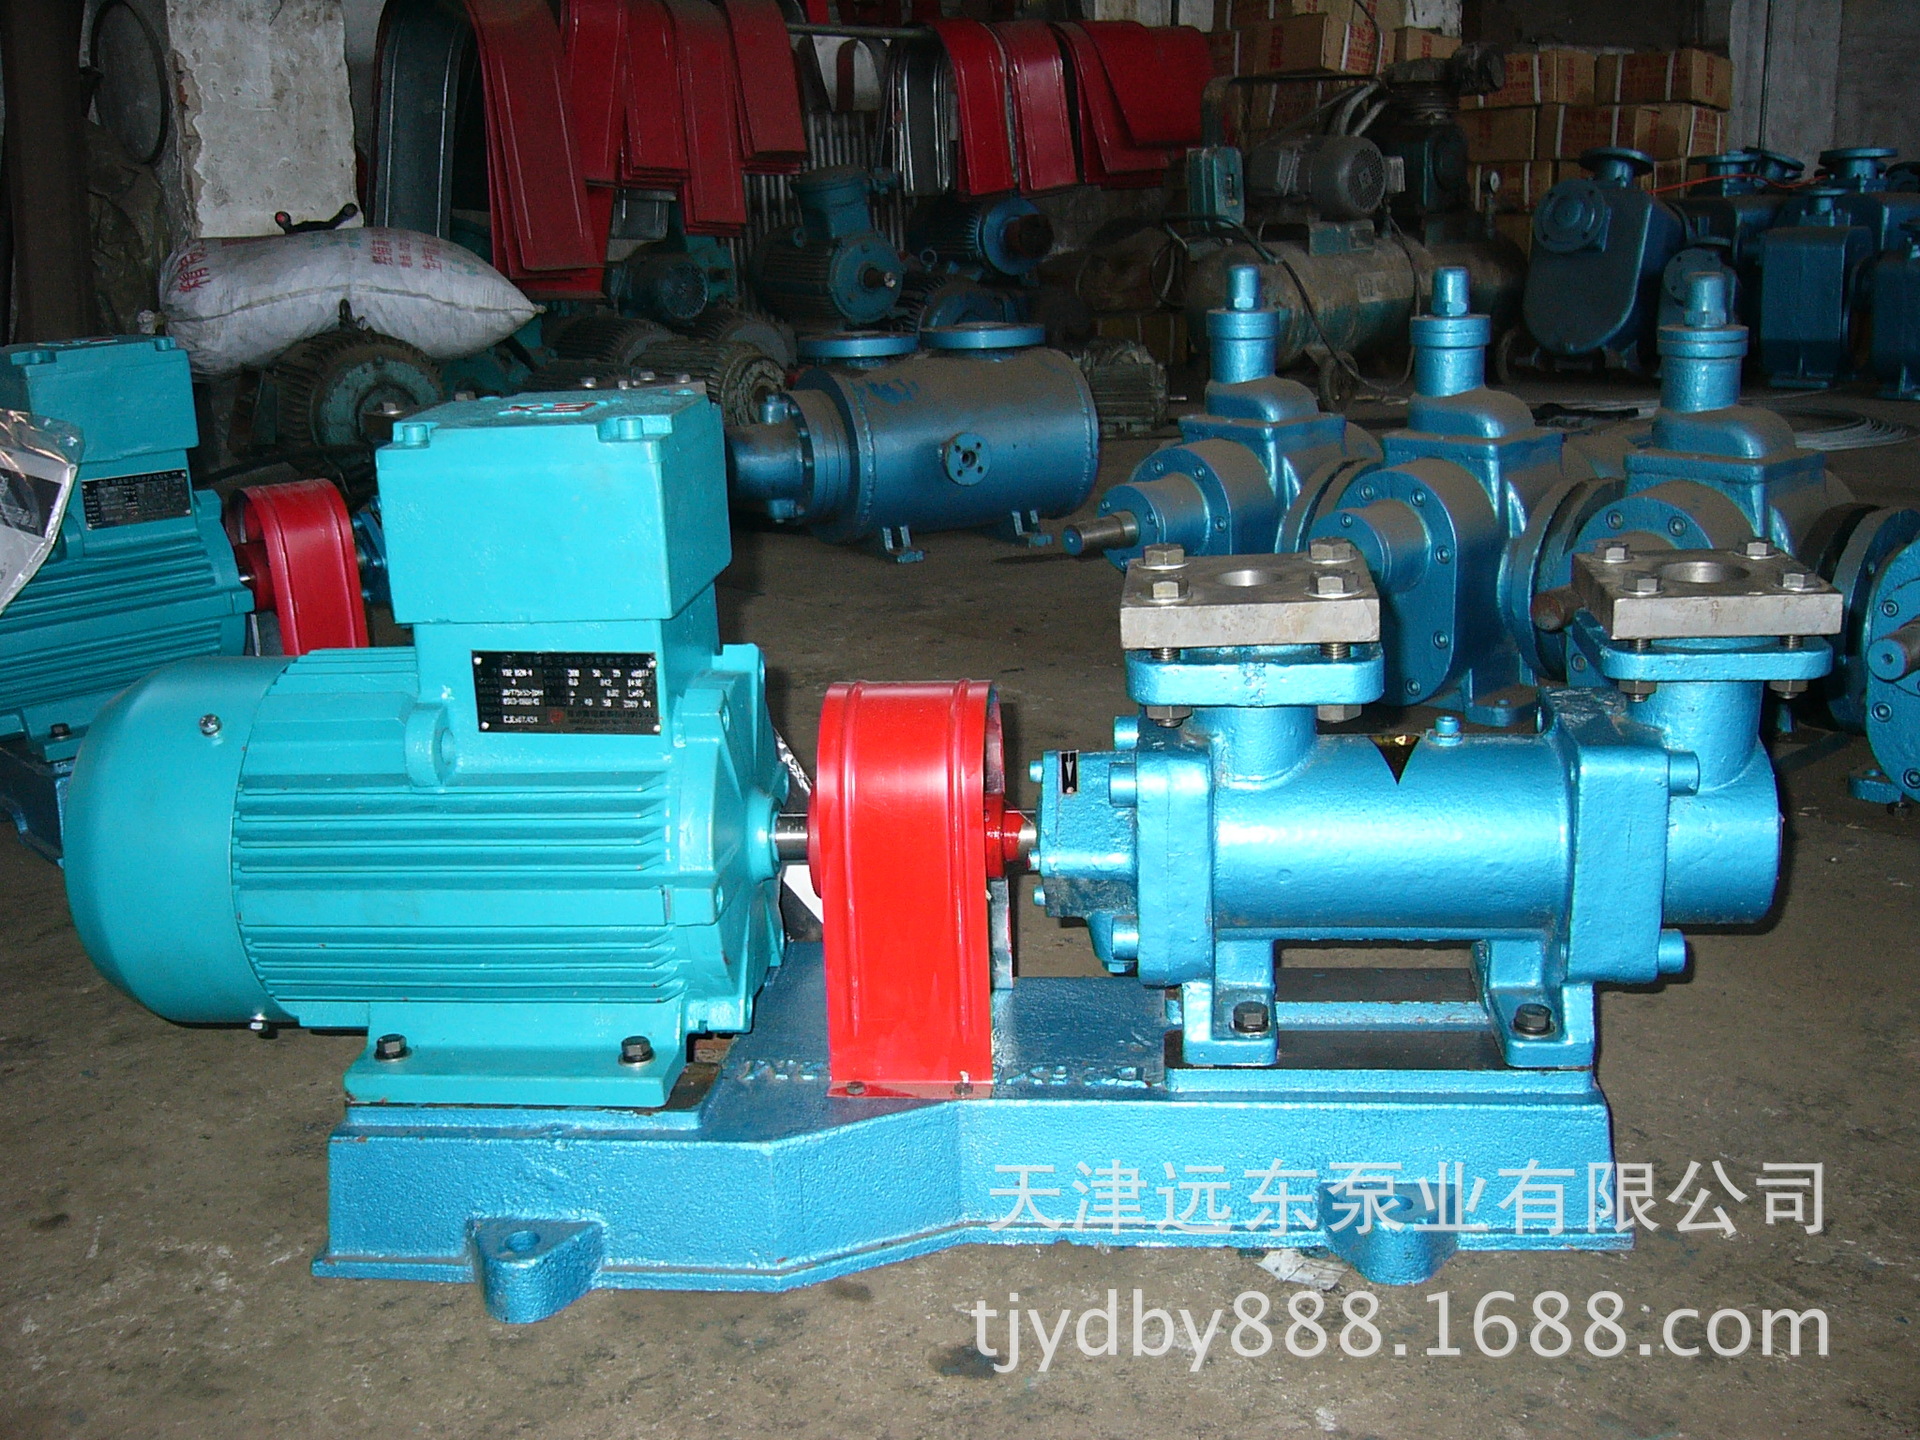 天津远东 3GR36X6AW21三螺杆泵 3g型三螺杆泵 螺杆泵生产厂家 厂示例图2